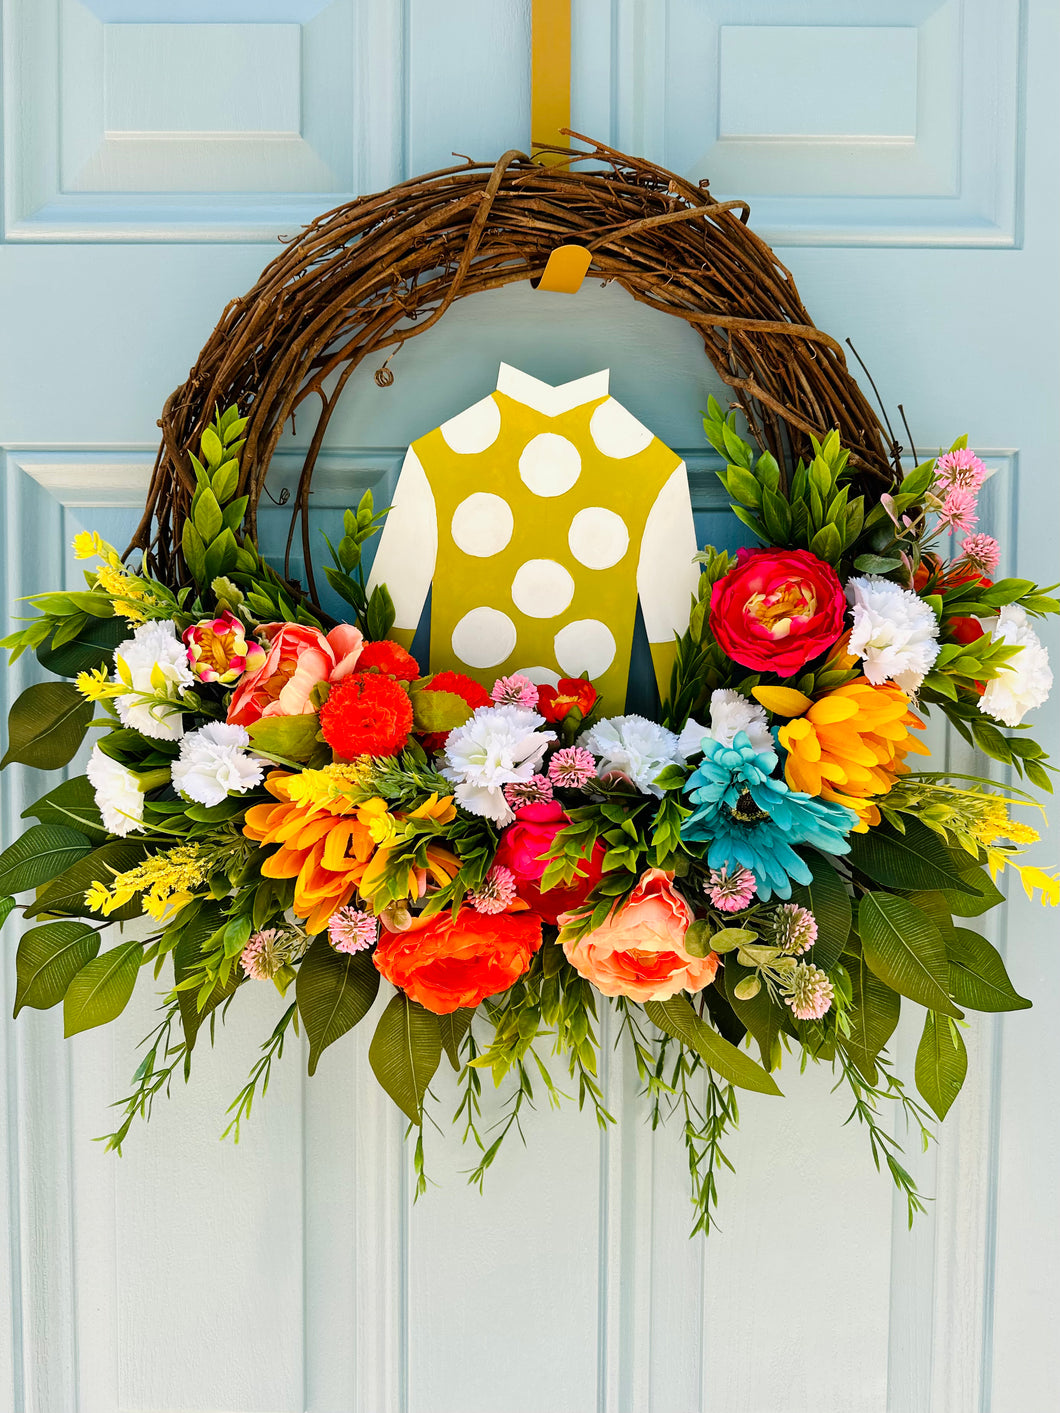 Custom colorful Derby wreath